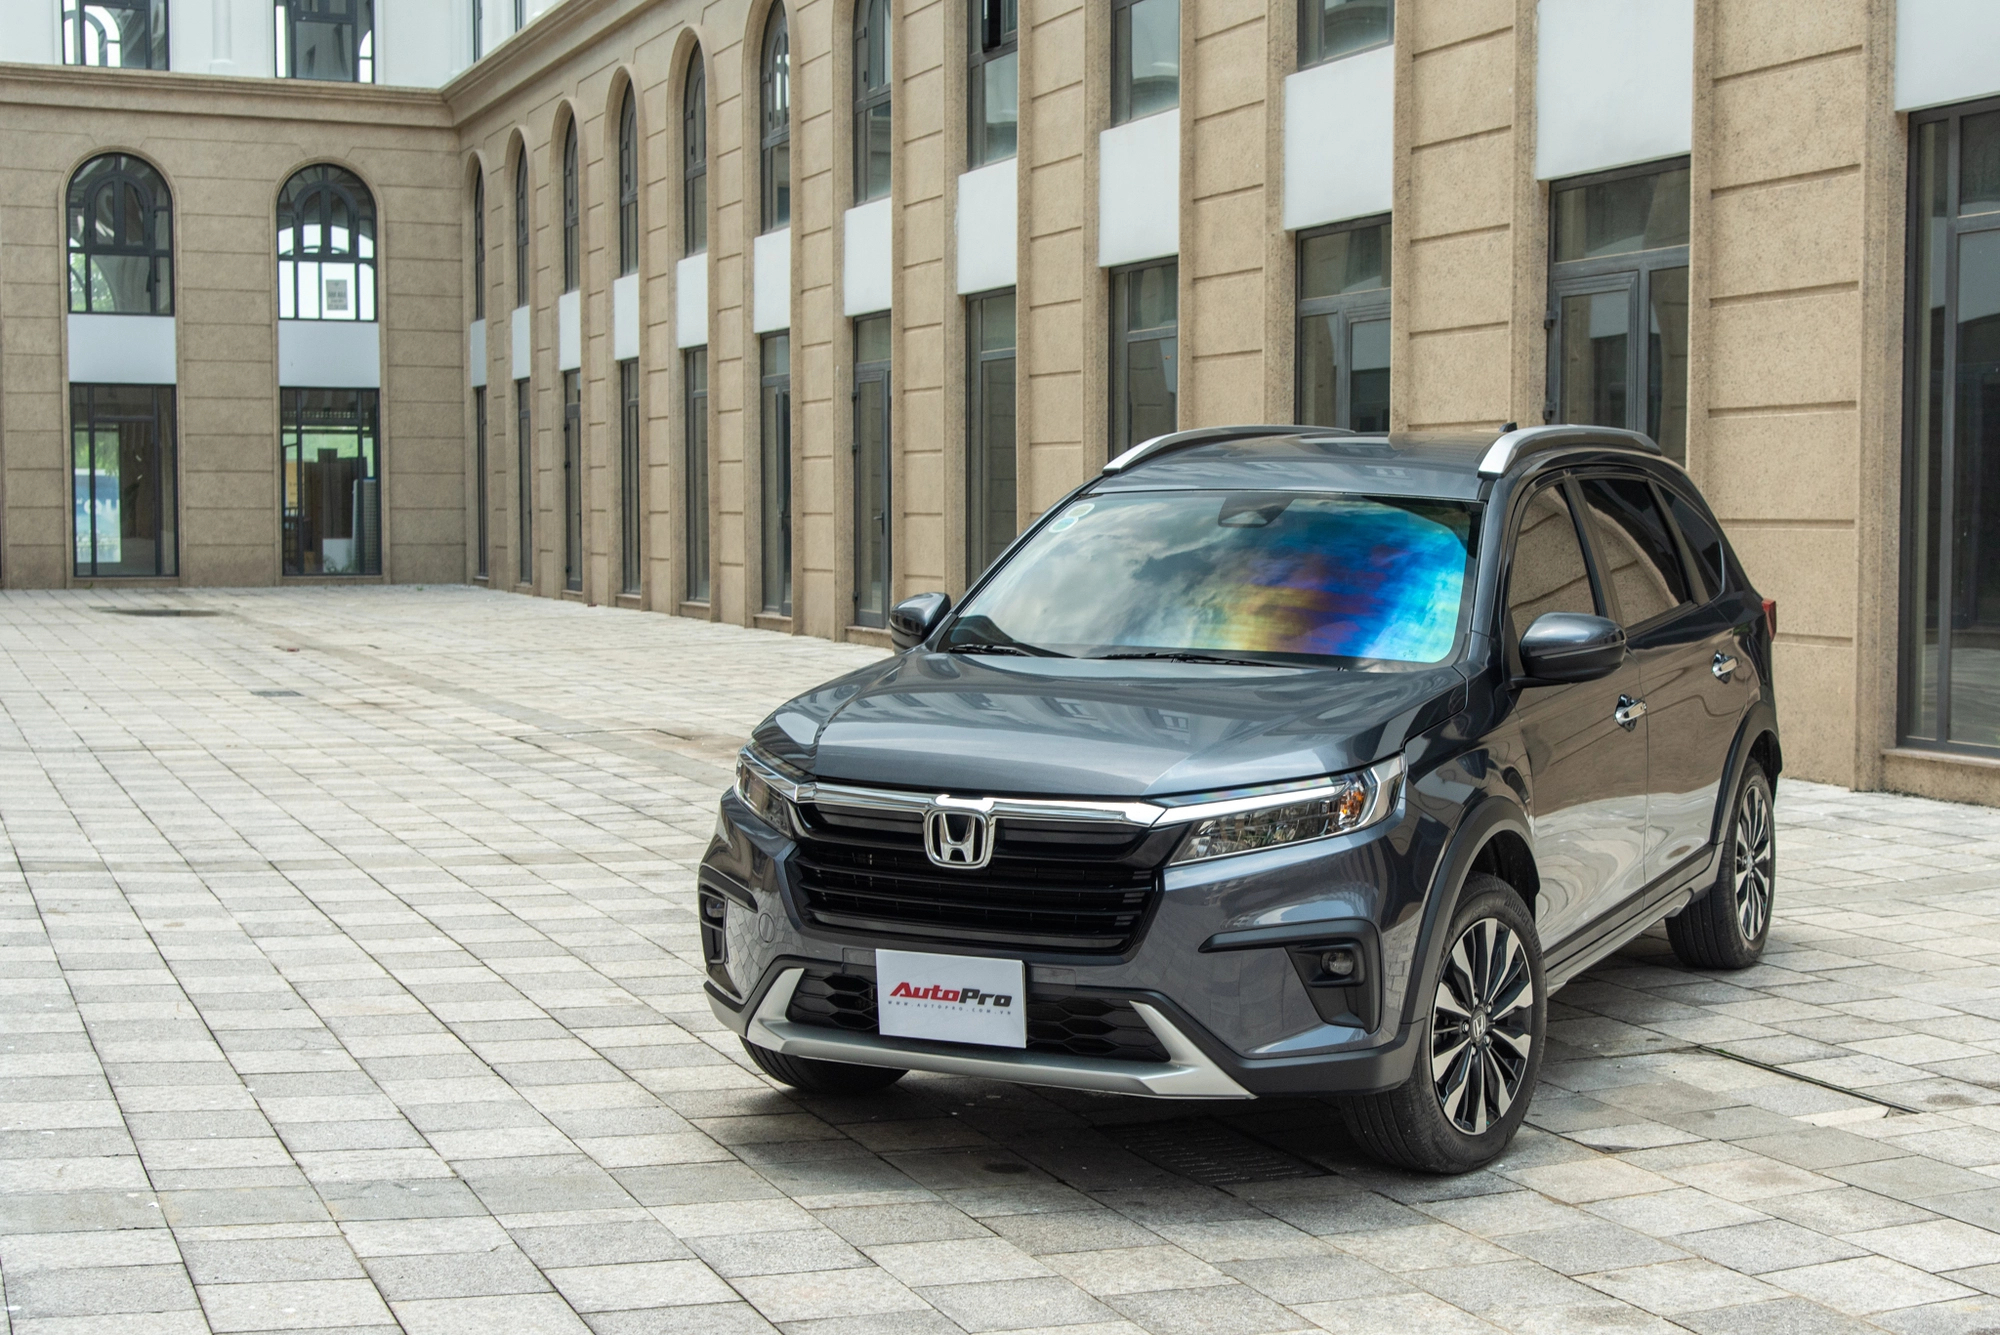 Mua Honda BR-V trong tháng 9/2023 nhận ngay khuyến mãi thuế trước bạ 50% (bản L) và 100% (bản G). Liên hệ đại lý Honda Ô tô Khánh Hòa - Nha Trang | Hotline 0905 254 255